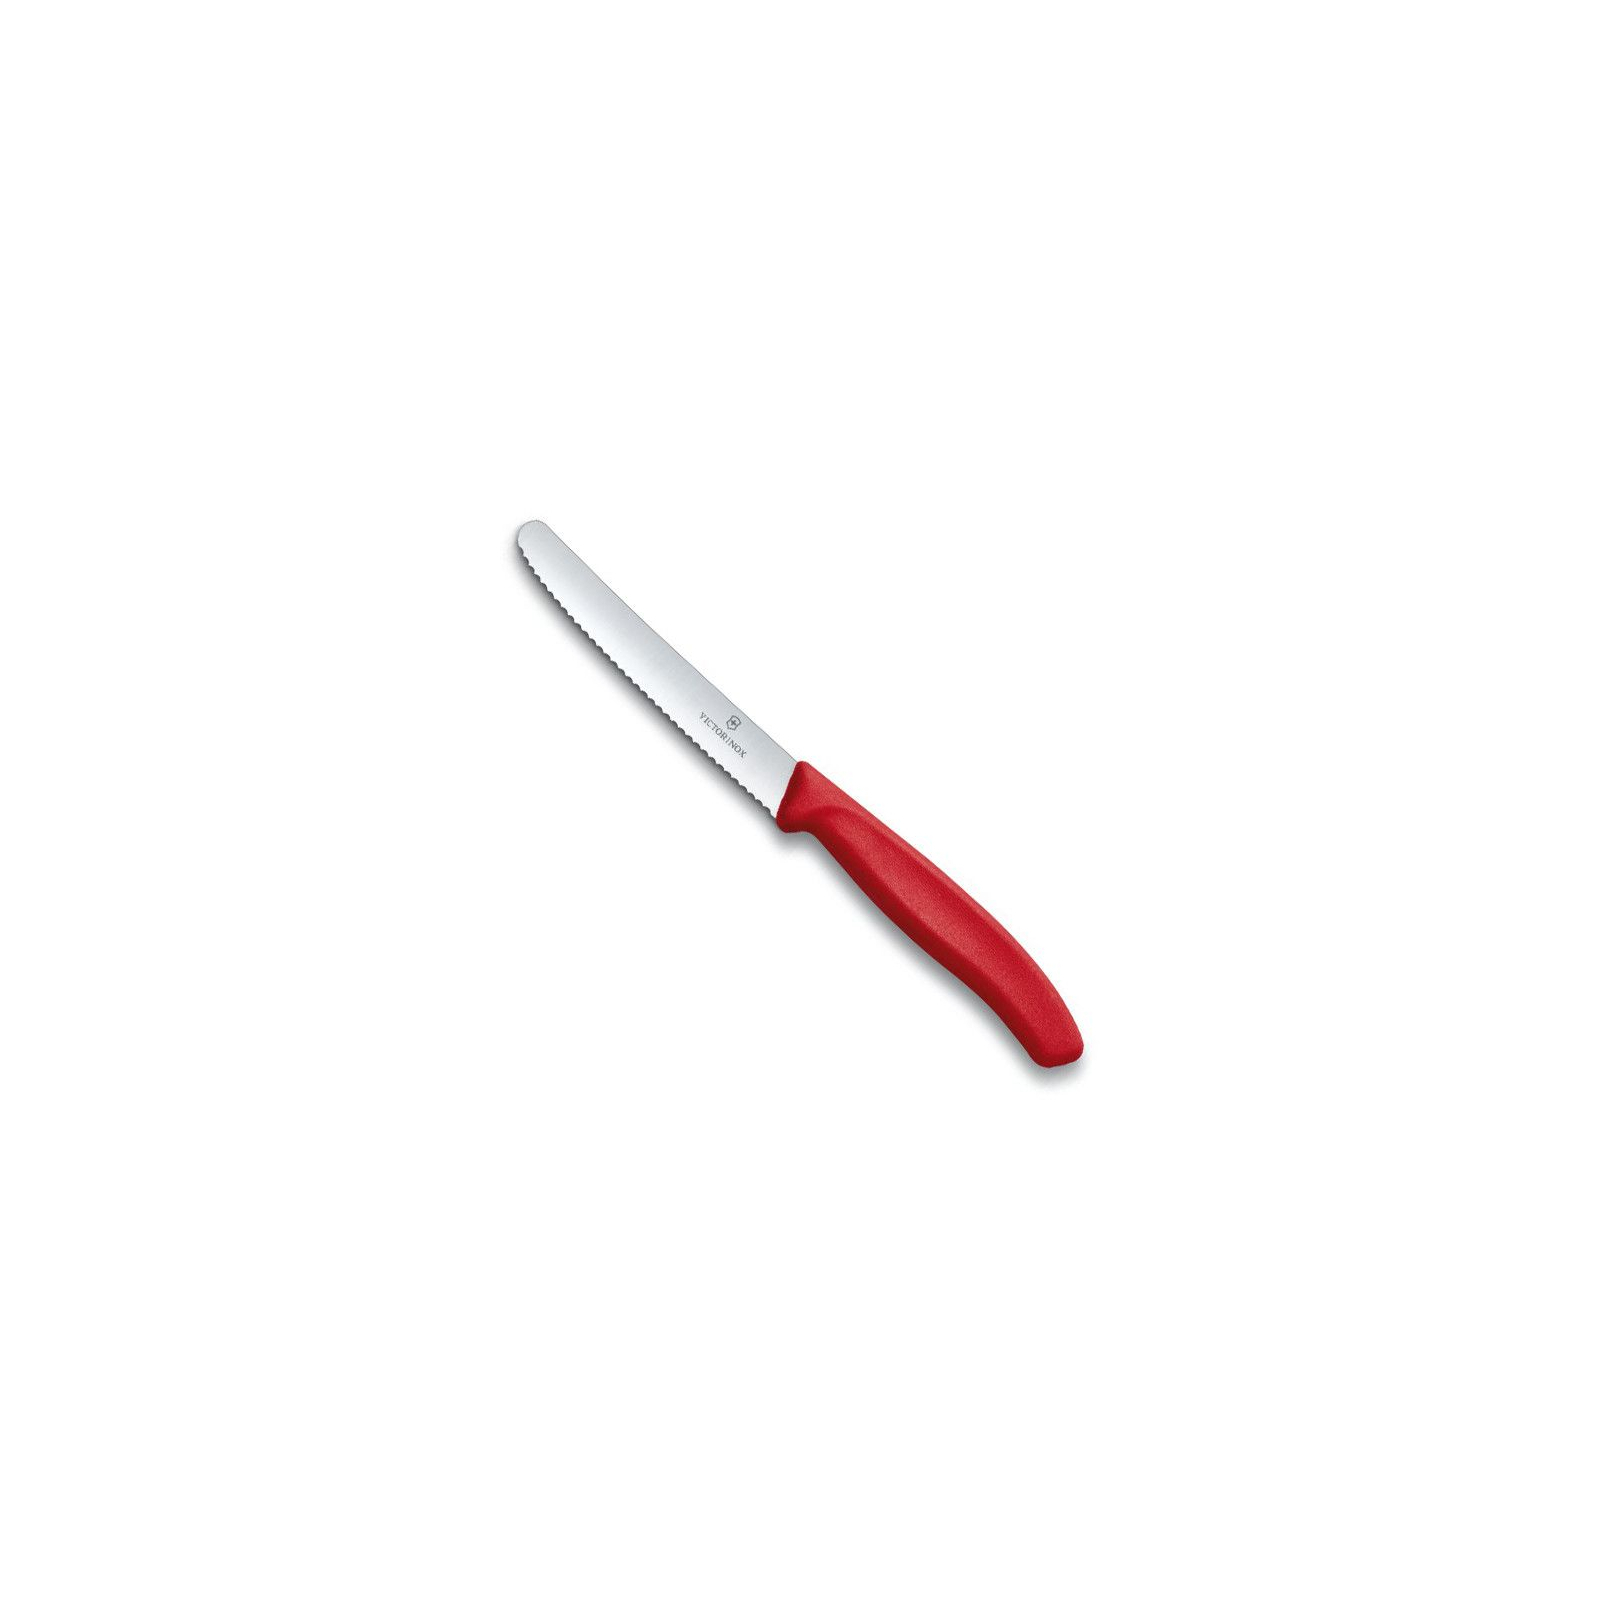 Набор ножей Victorinox SwissClassic из 3 предметов Красный (6.7111.3) изображение 3